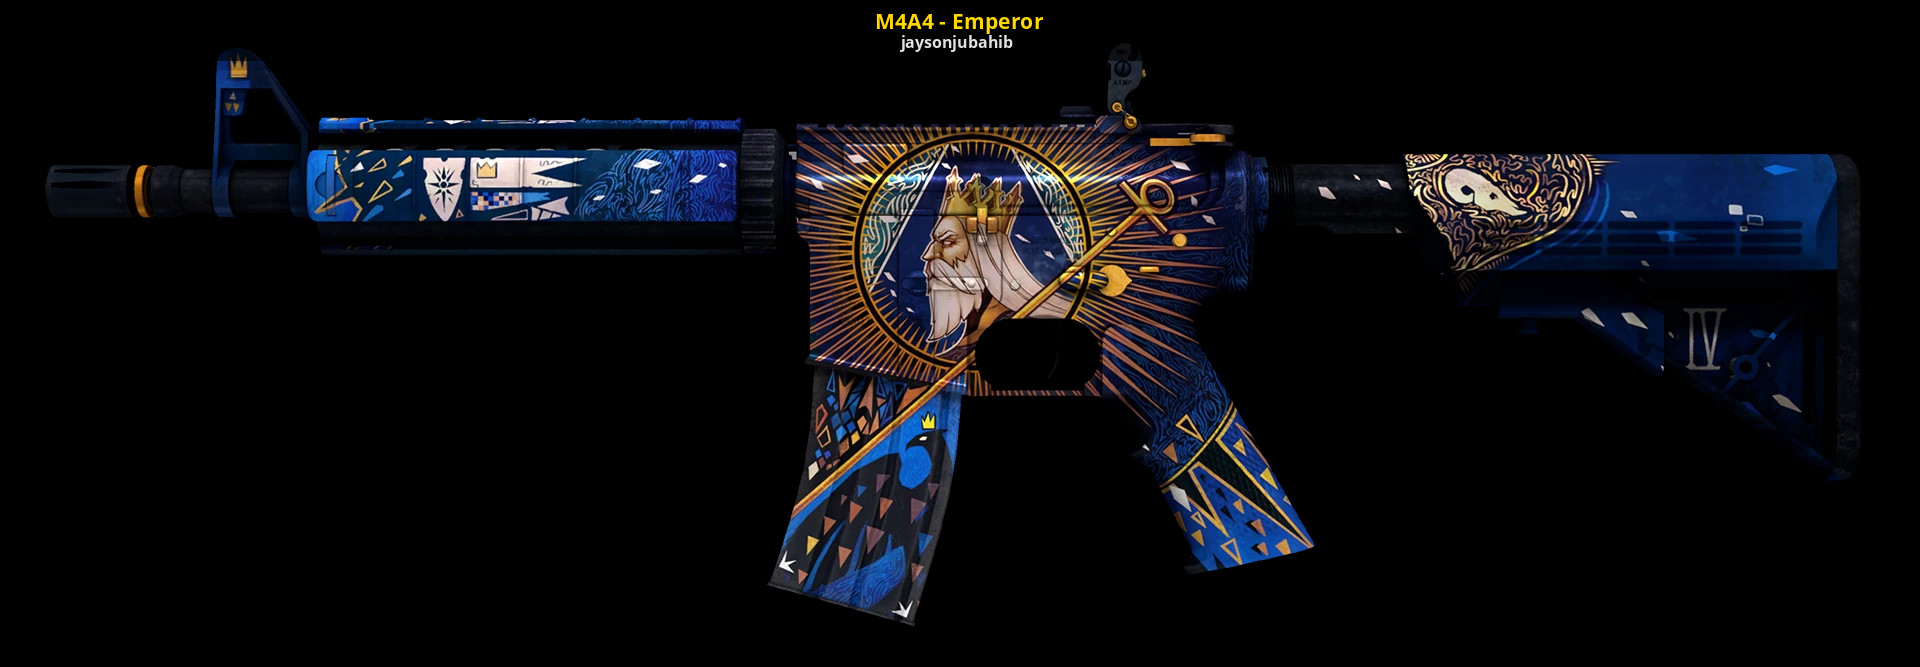 M4a4 император после фото 3